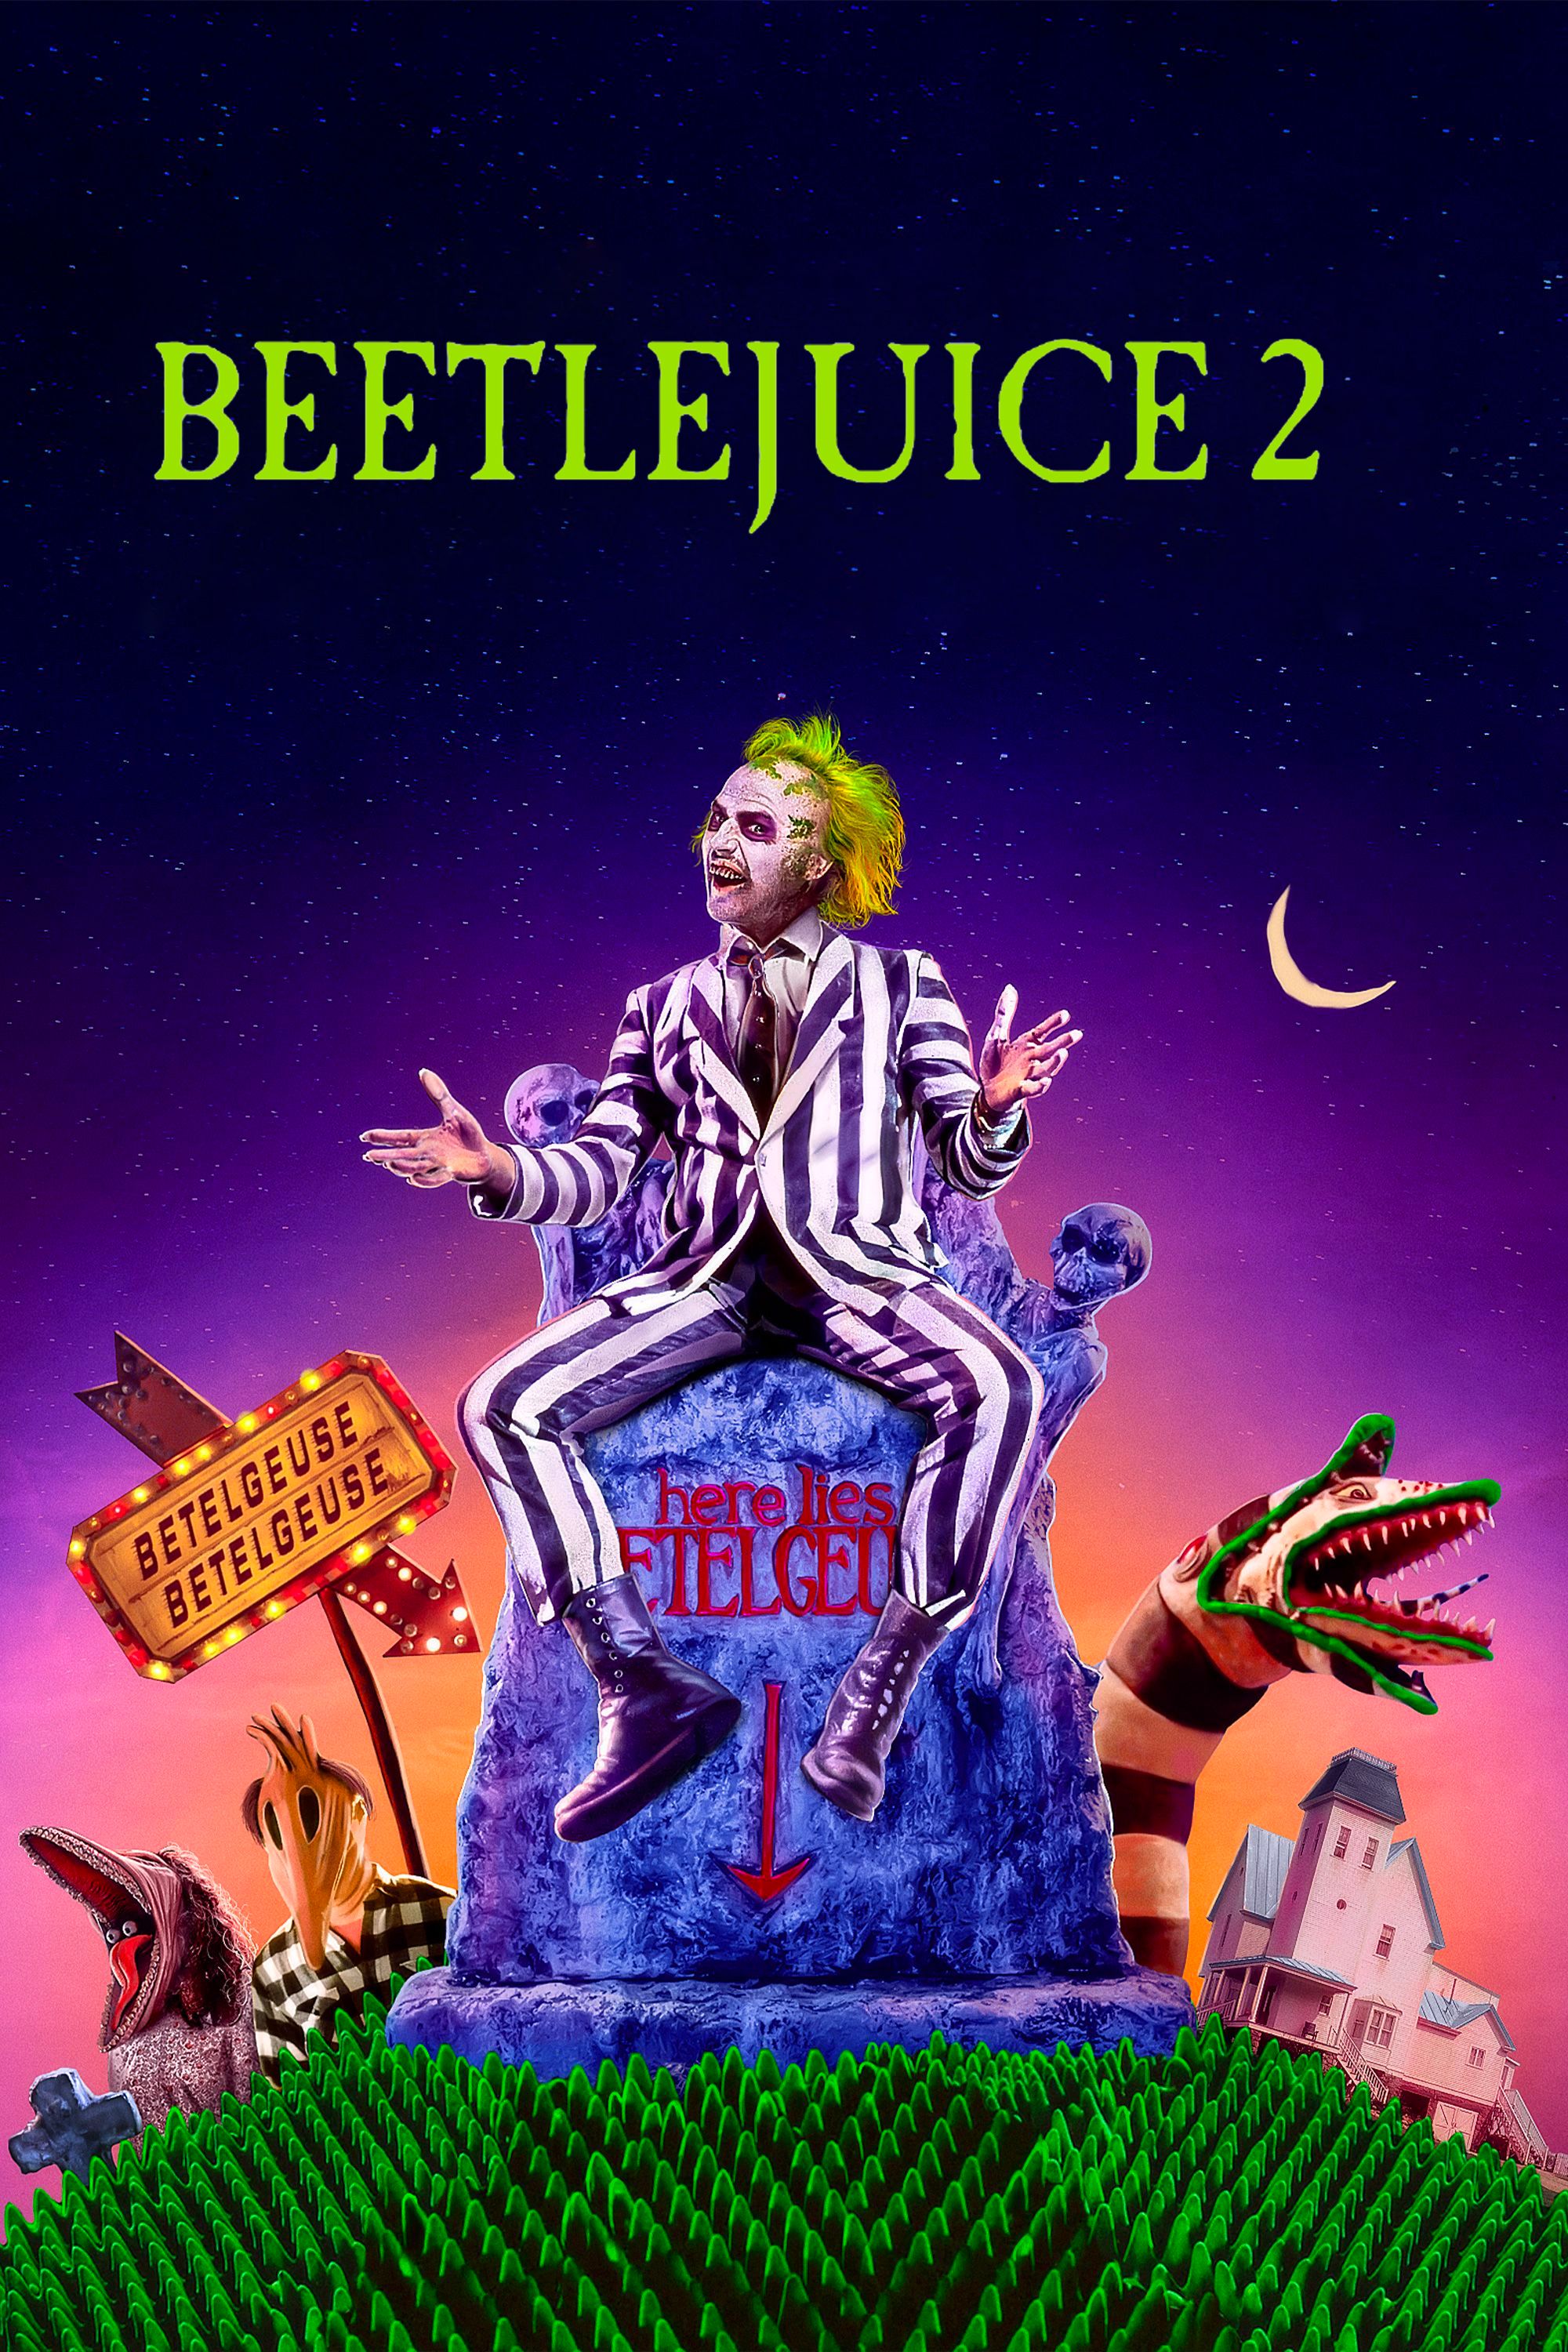 Beetlejuice 2 Poster